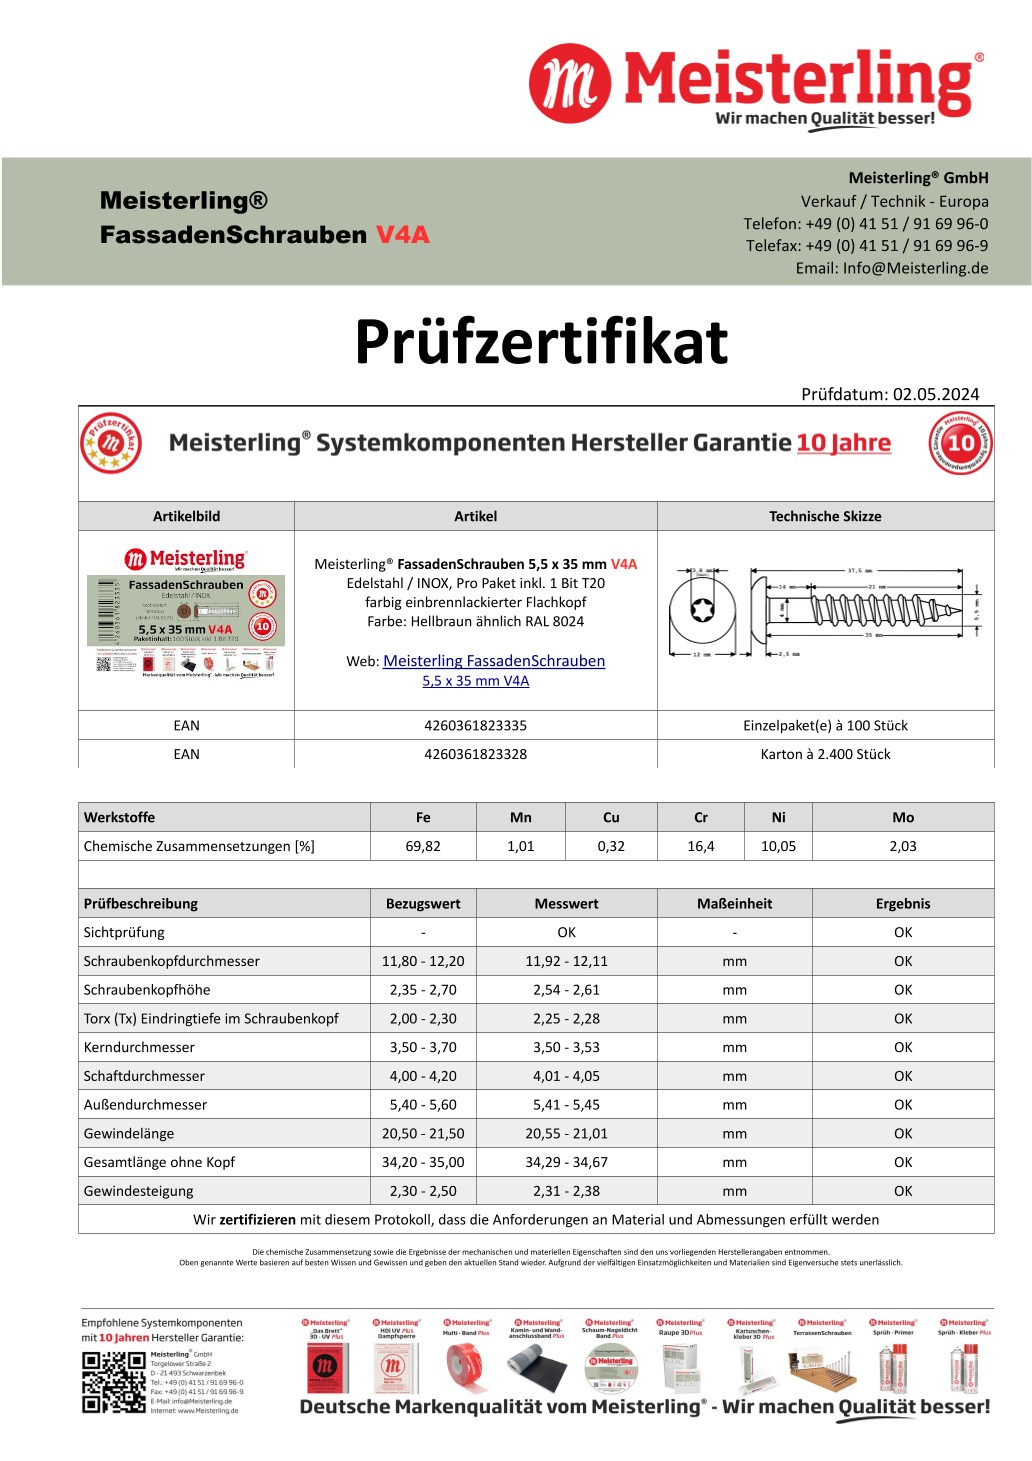 Prüfzertifikat Meisterling® FassadenSchrauben 5,5 x 35 mm V4a hellbraun